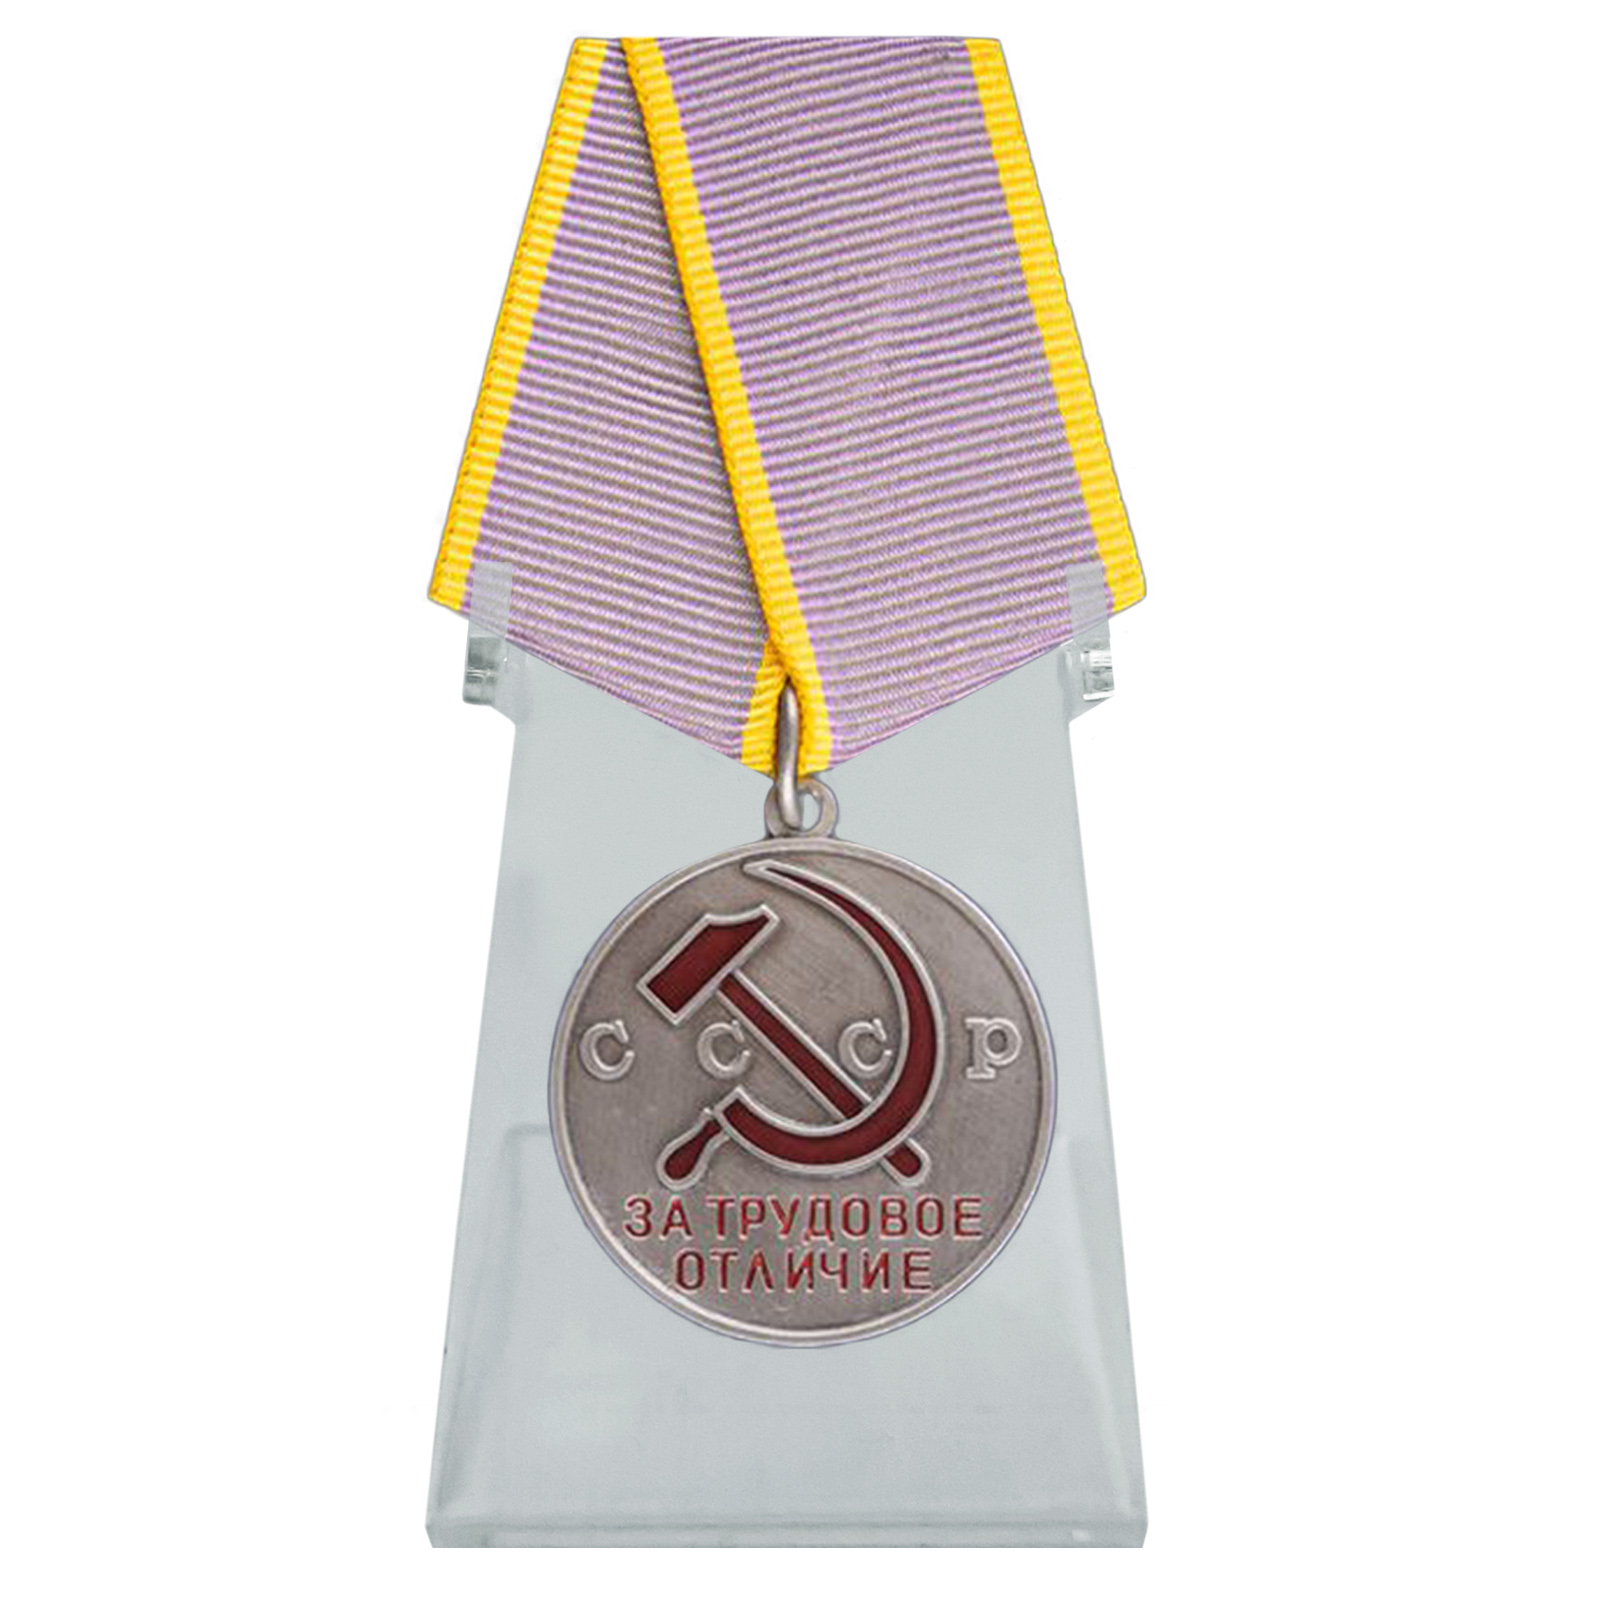 Медаль "За трудовое отличие" на подставке